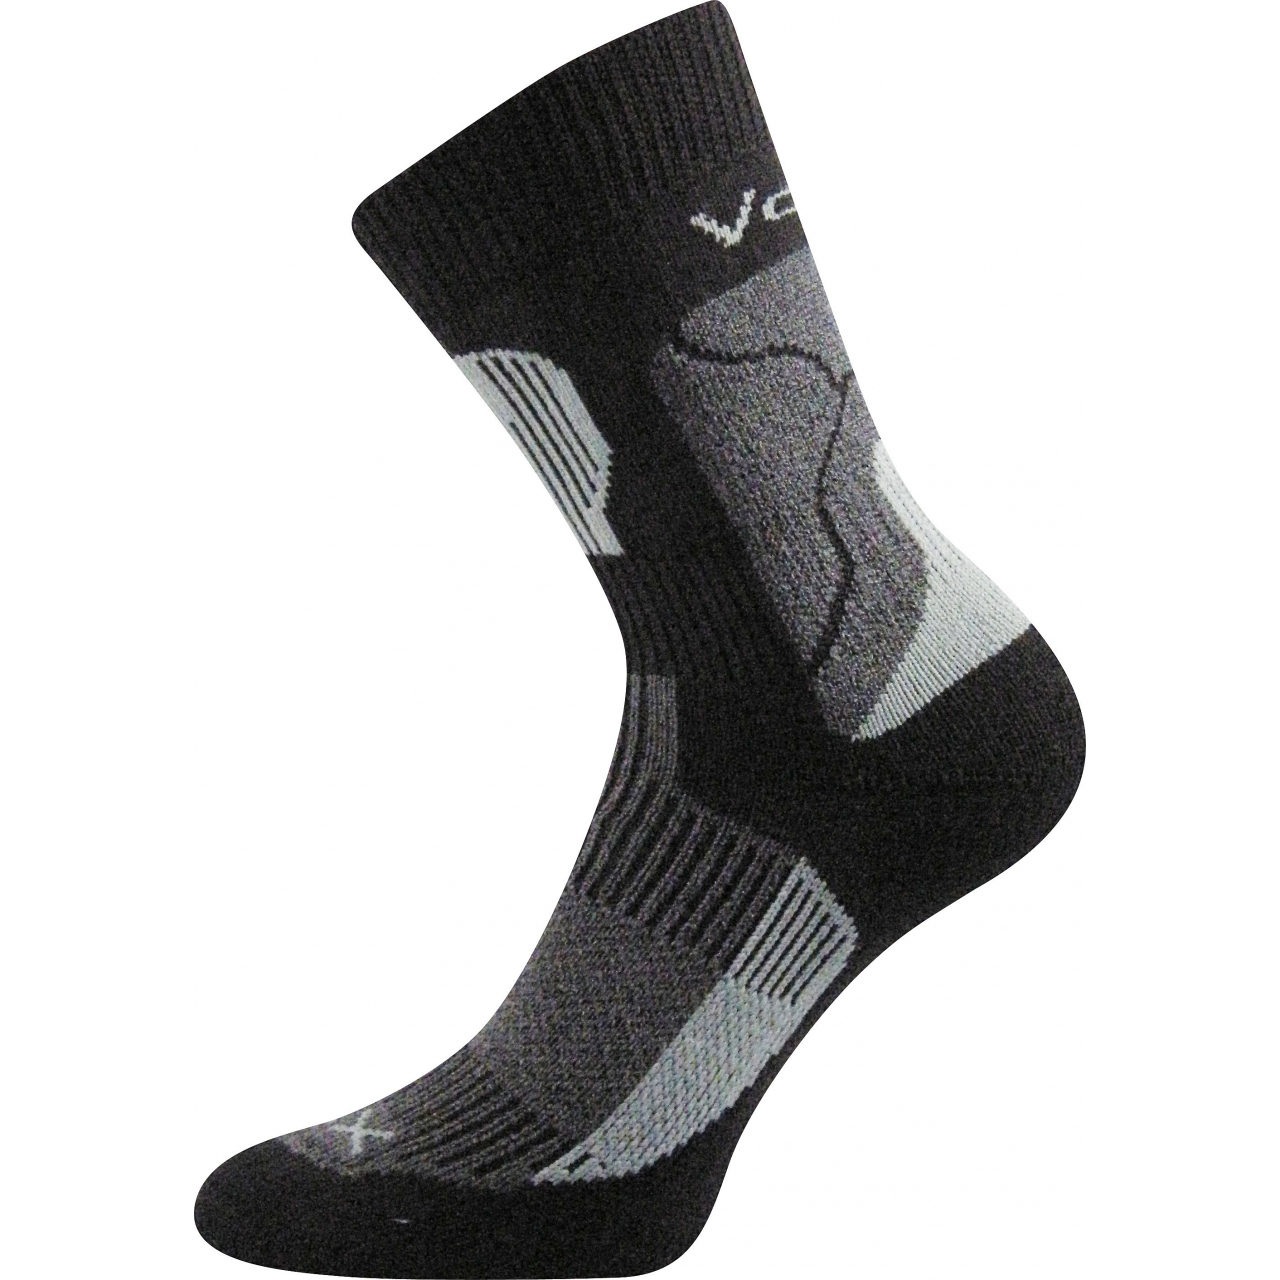 Ponožky unisex termo Voxx Treking - černé-šedé, 35-37